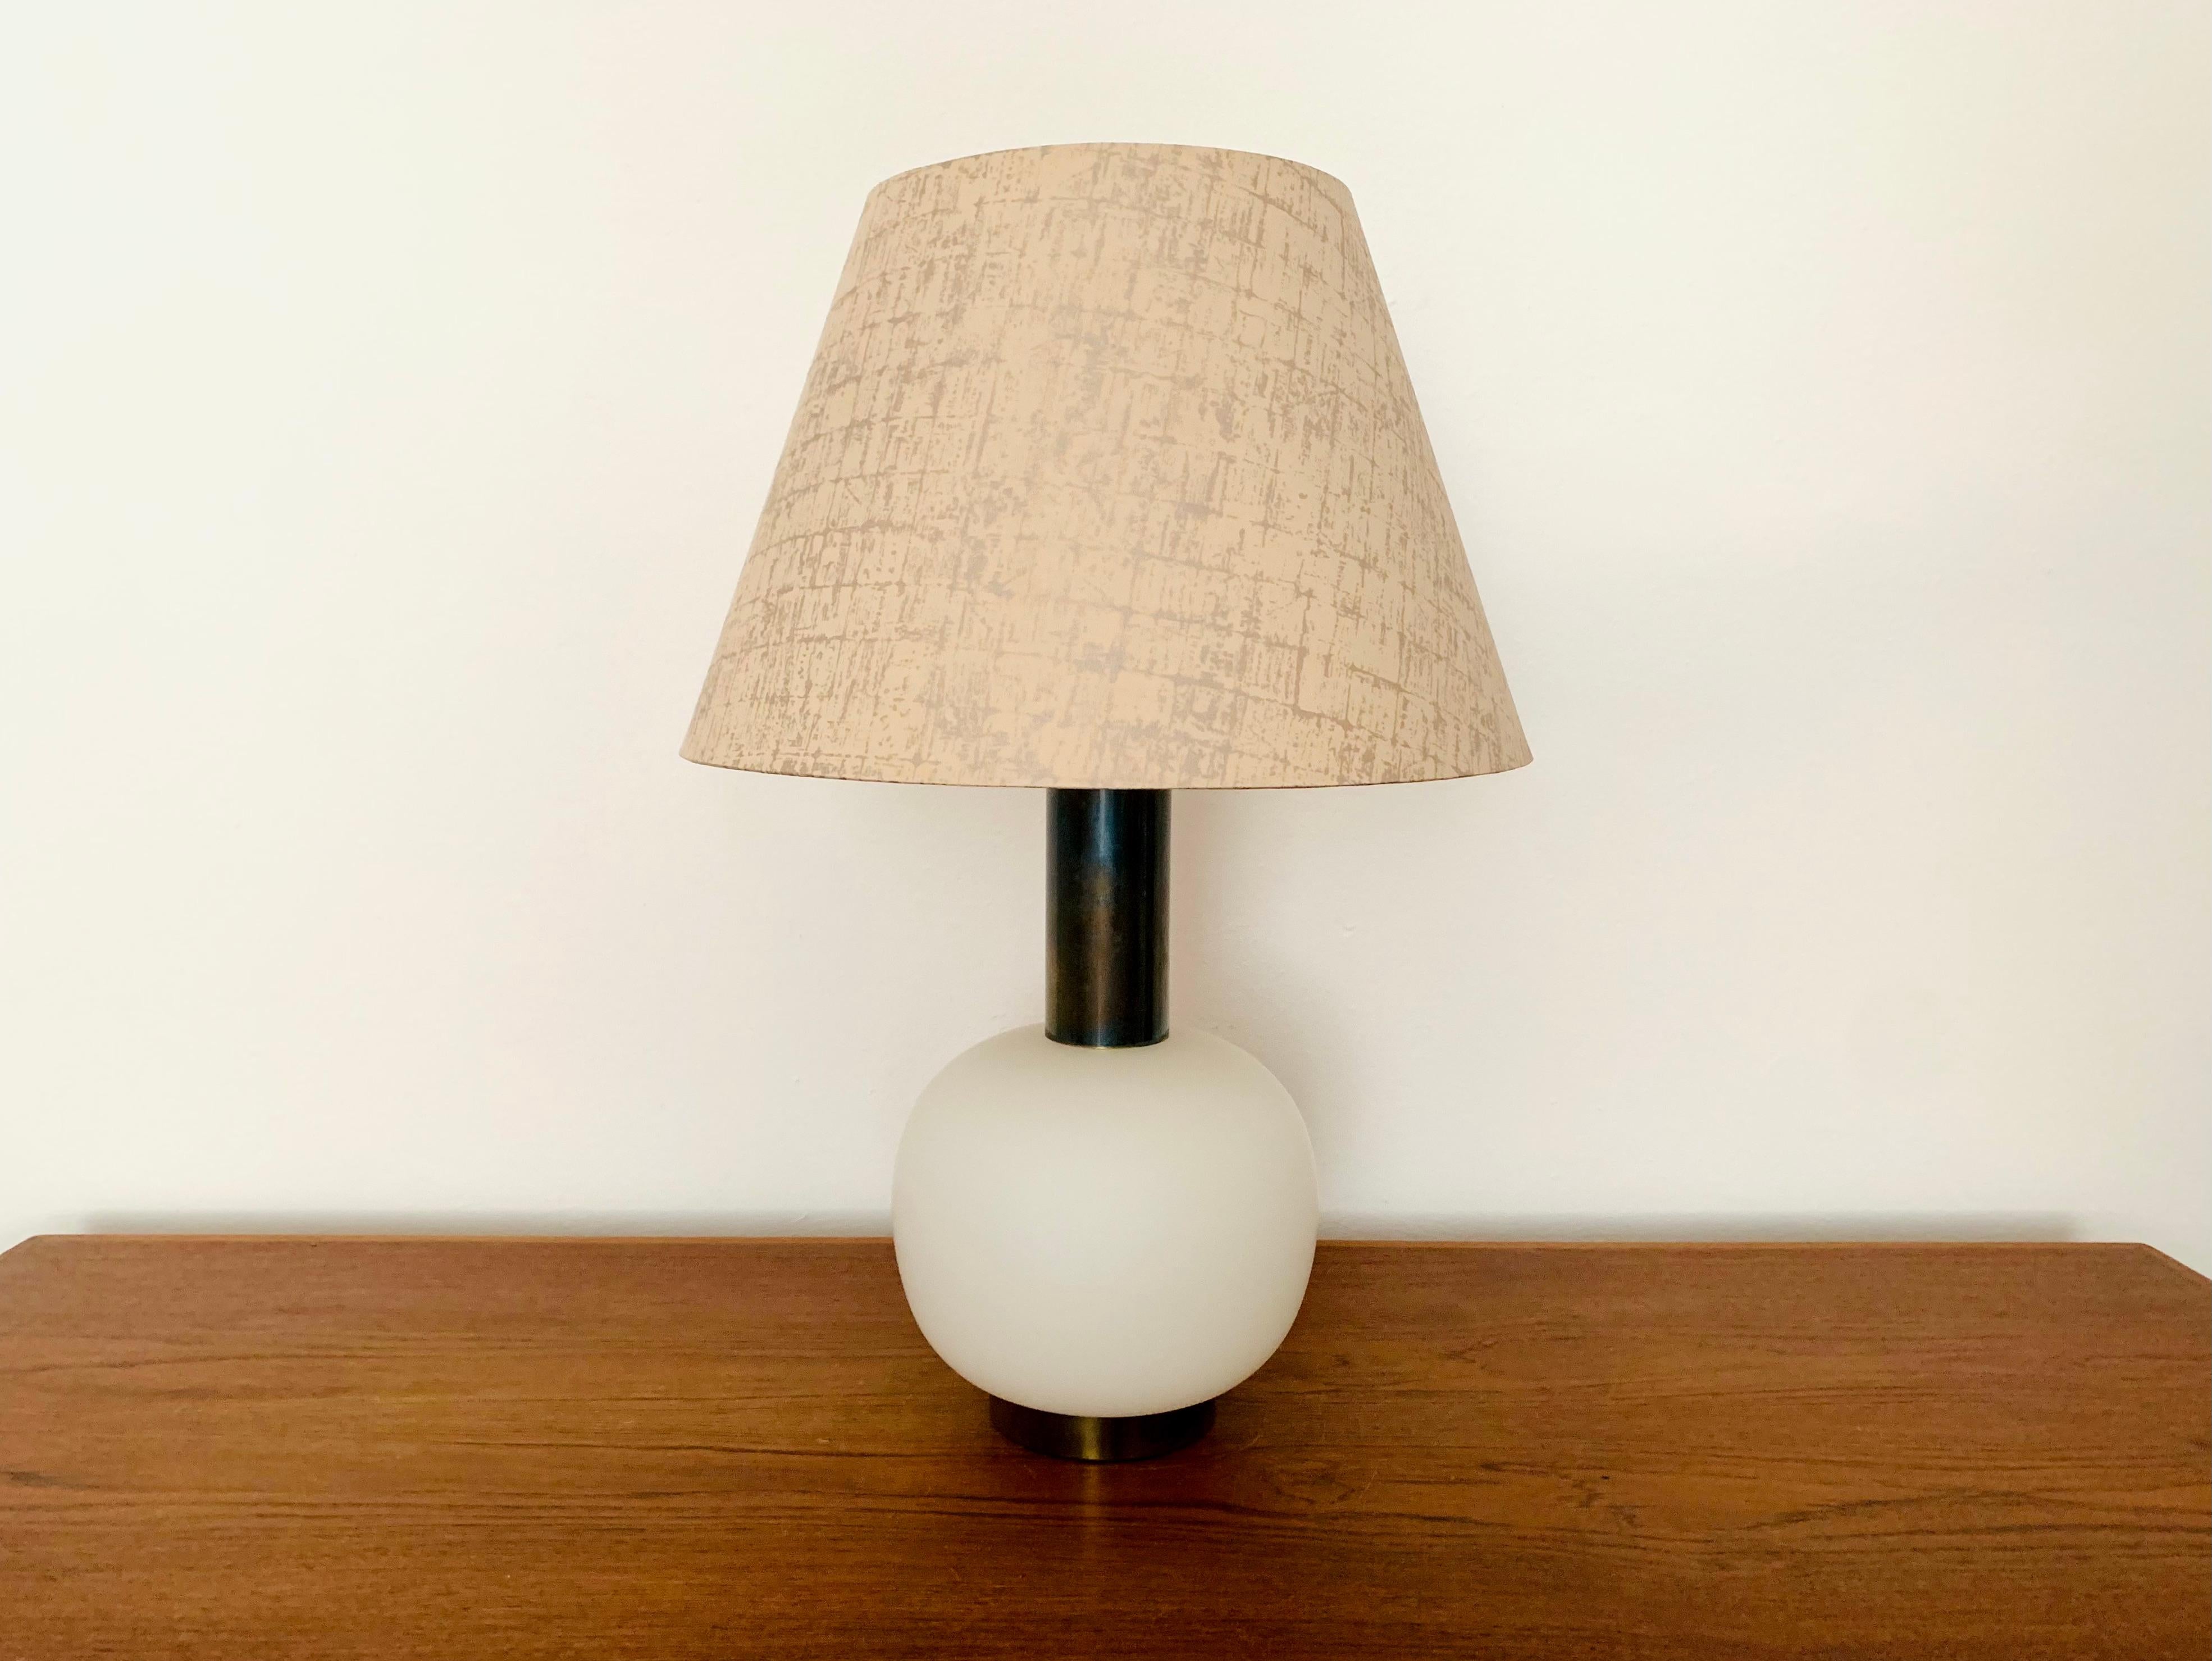 Très belle lampe de table en verre de Murano de grande qualité datant des années 1960.
La lampe est très noble et constitue un objet de design très particulier.
La base en verre éclairée crée une lumière très agréable.

Condit :

Très bon état